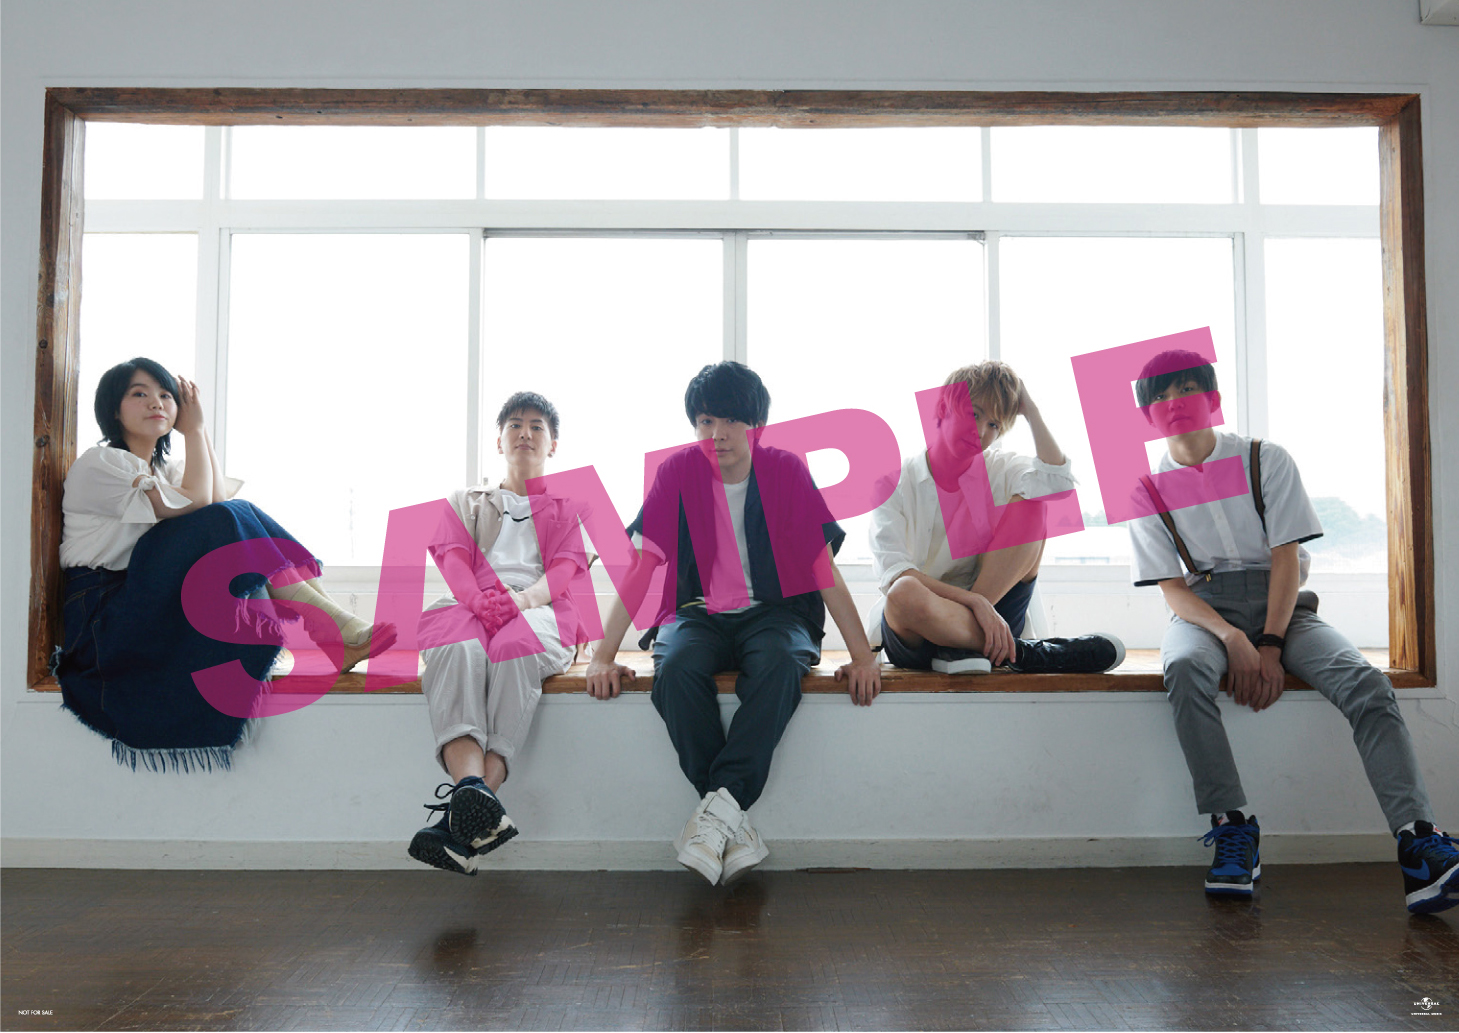 7th Single 青と夏 スペシャルページ Universal Music Japan